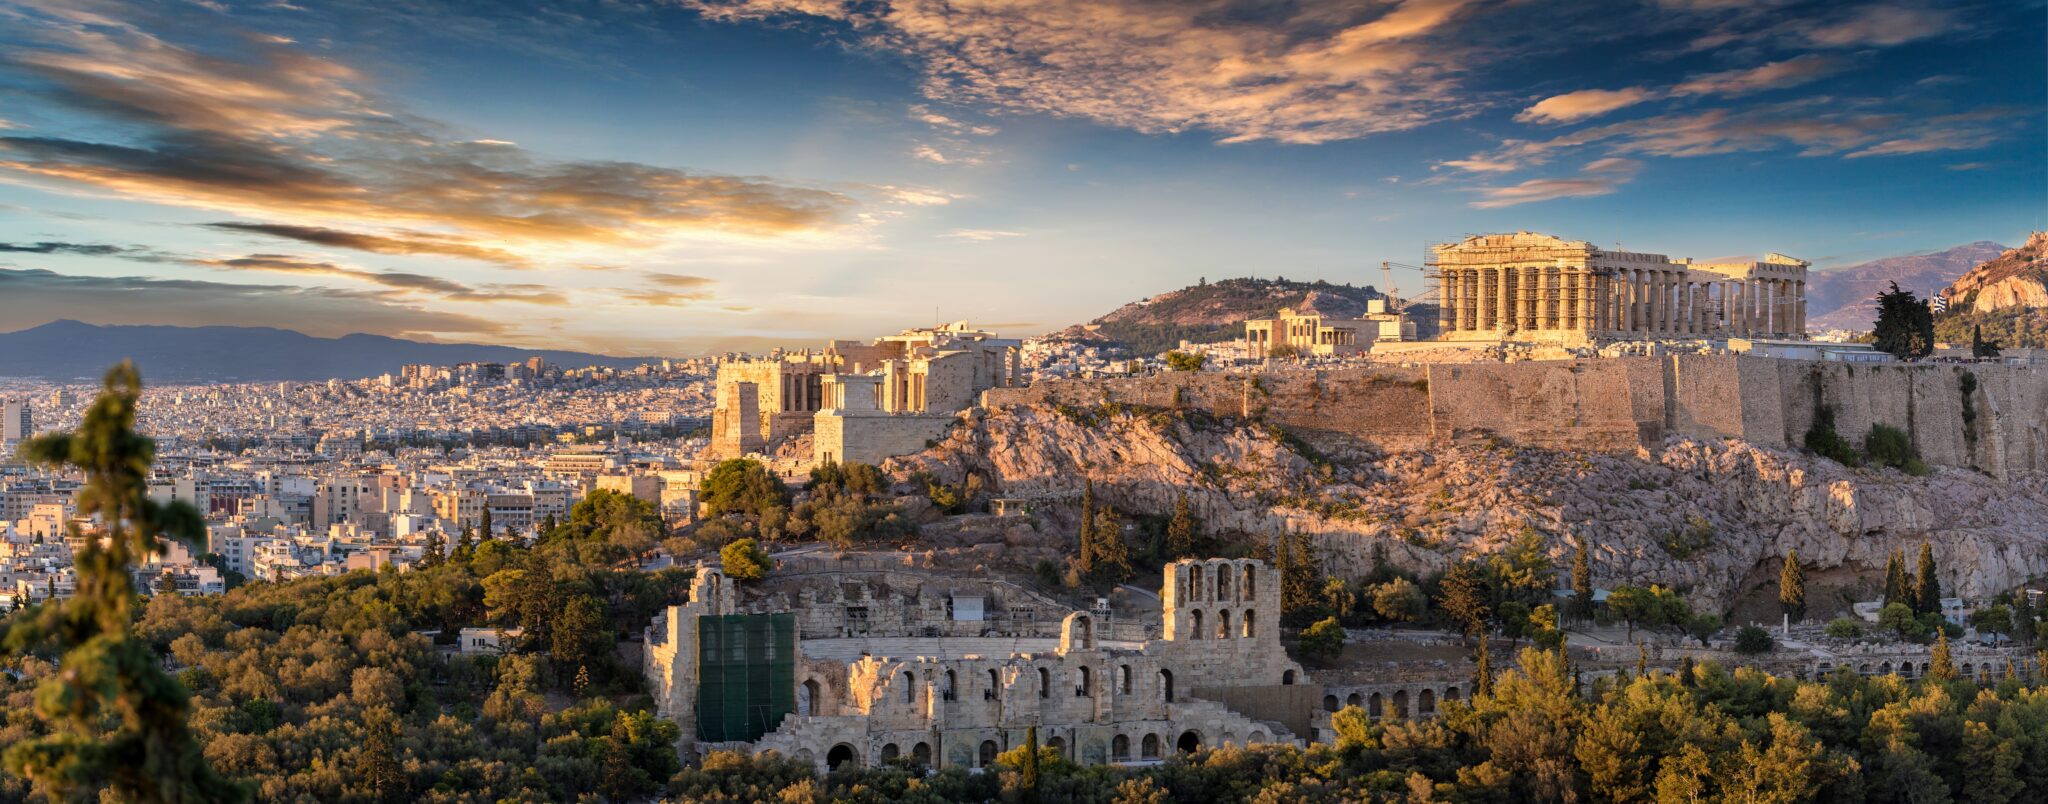 Panorama der Akropolis von Athen, Griechenland, bei Sonnenuntergang ...